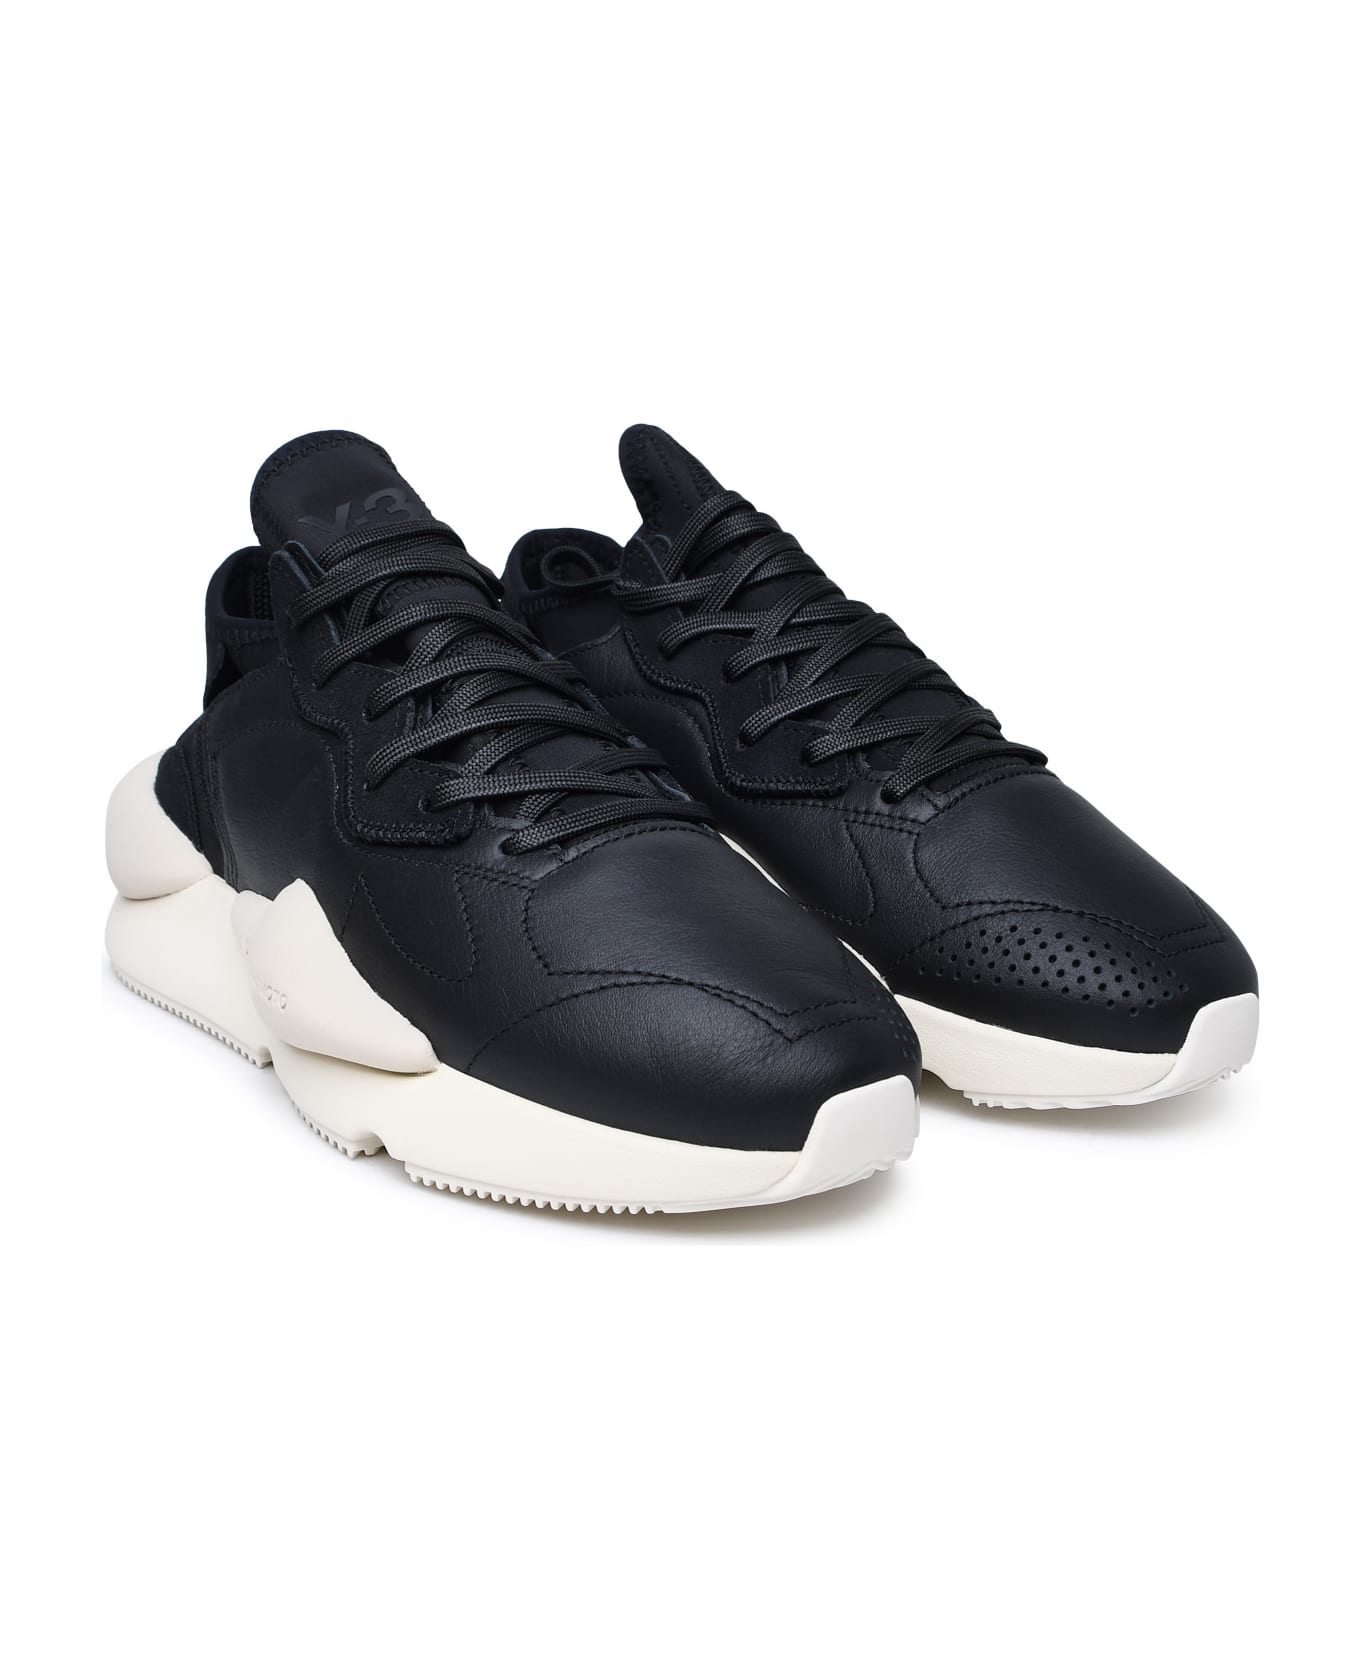 Y-3 Black Leather Blend Sneakers - Black